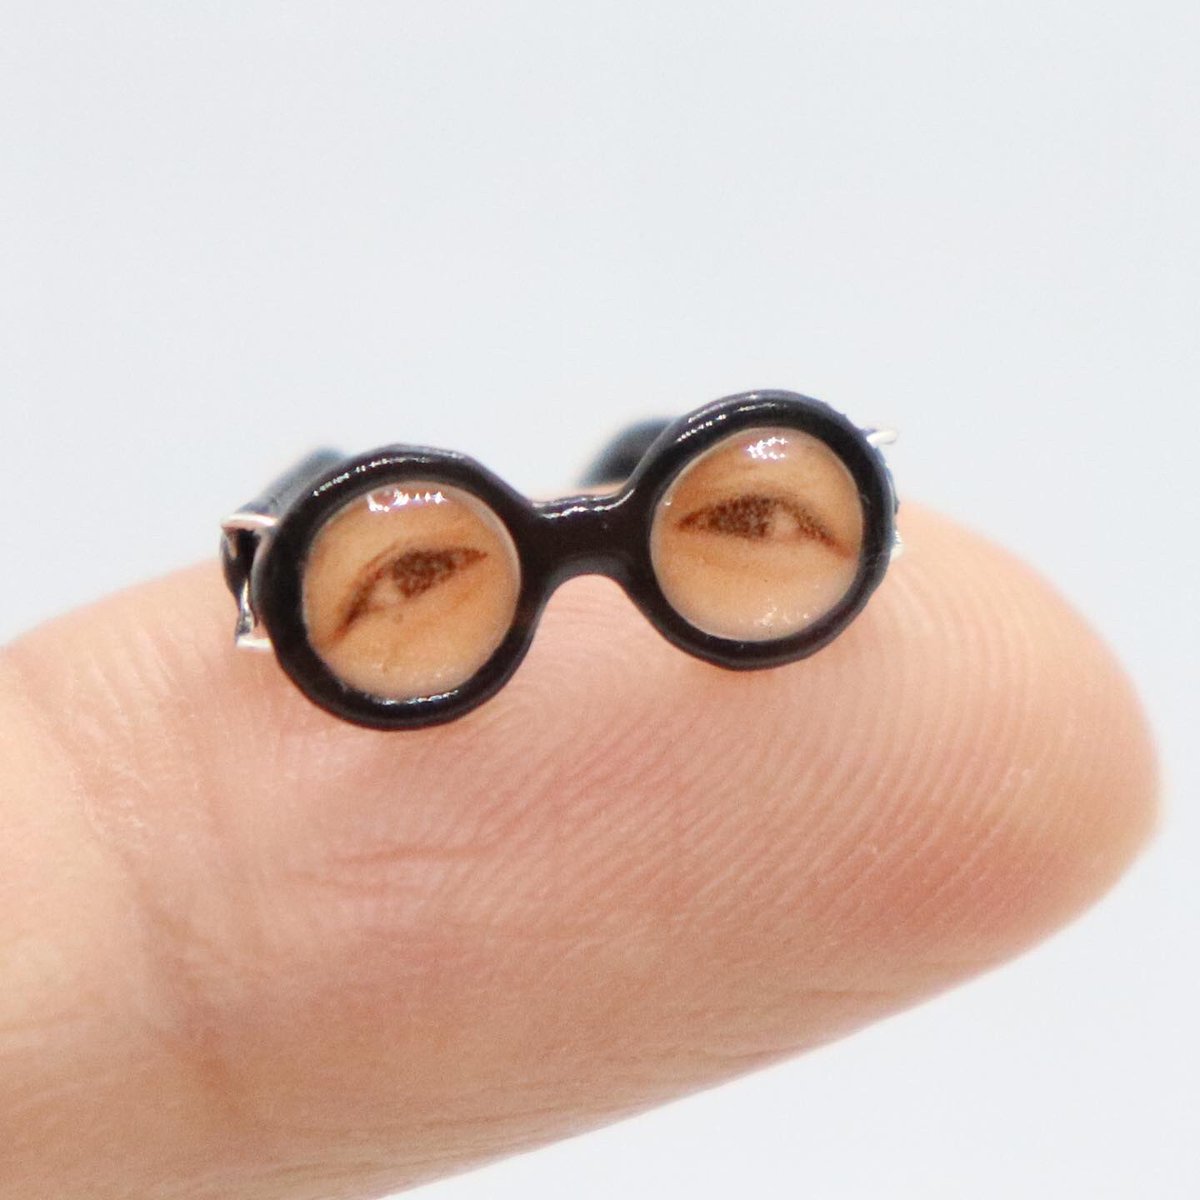 Nico Miniature Kanako K Twitter પર リアルな目のメガネ 女優さん試着中 こちらも少し大きめに作り直しました こちらも T Co Hnqefpj9gd 様に使って頂いております Miniature ミニチュア ミニチュアメガネ おもしろメガネ パリピ